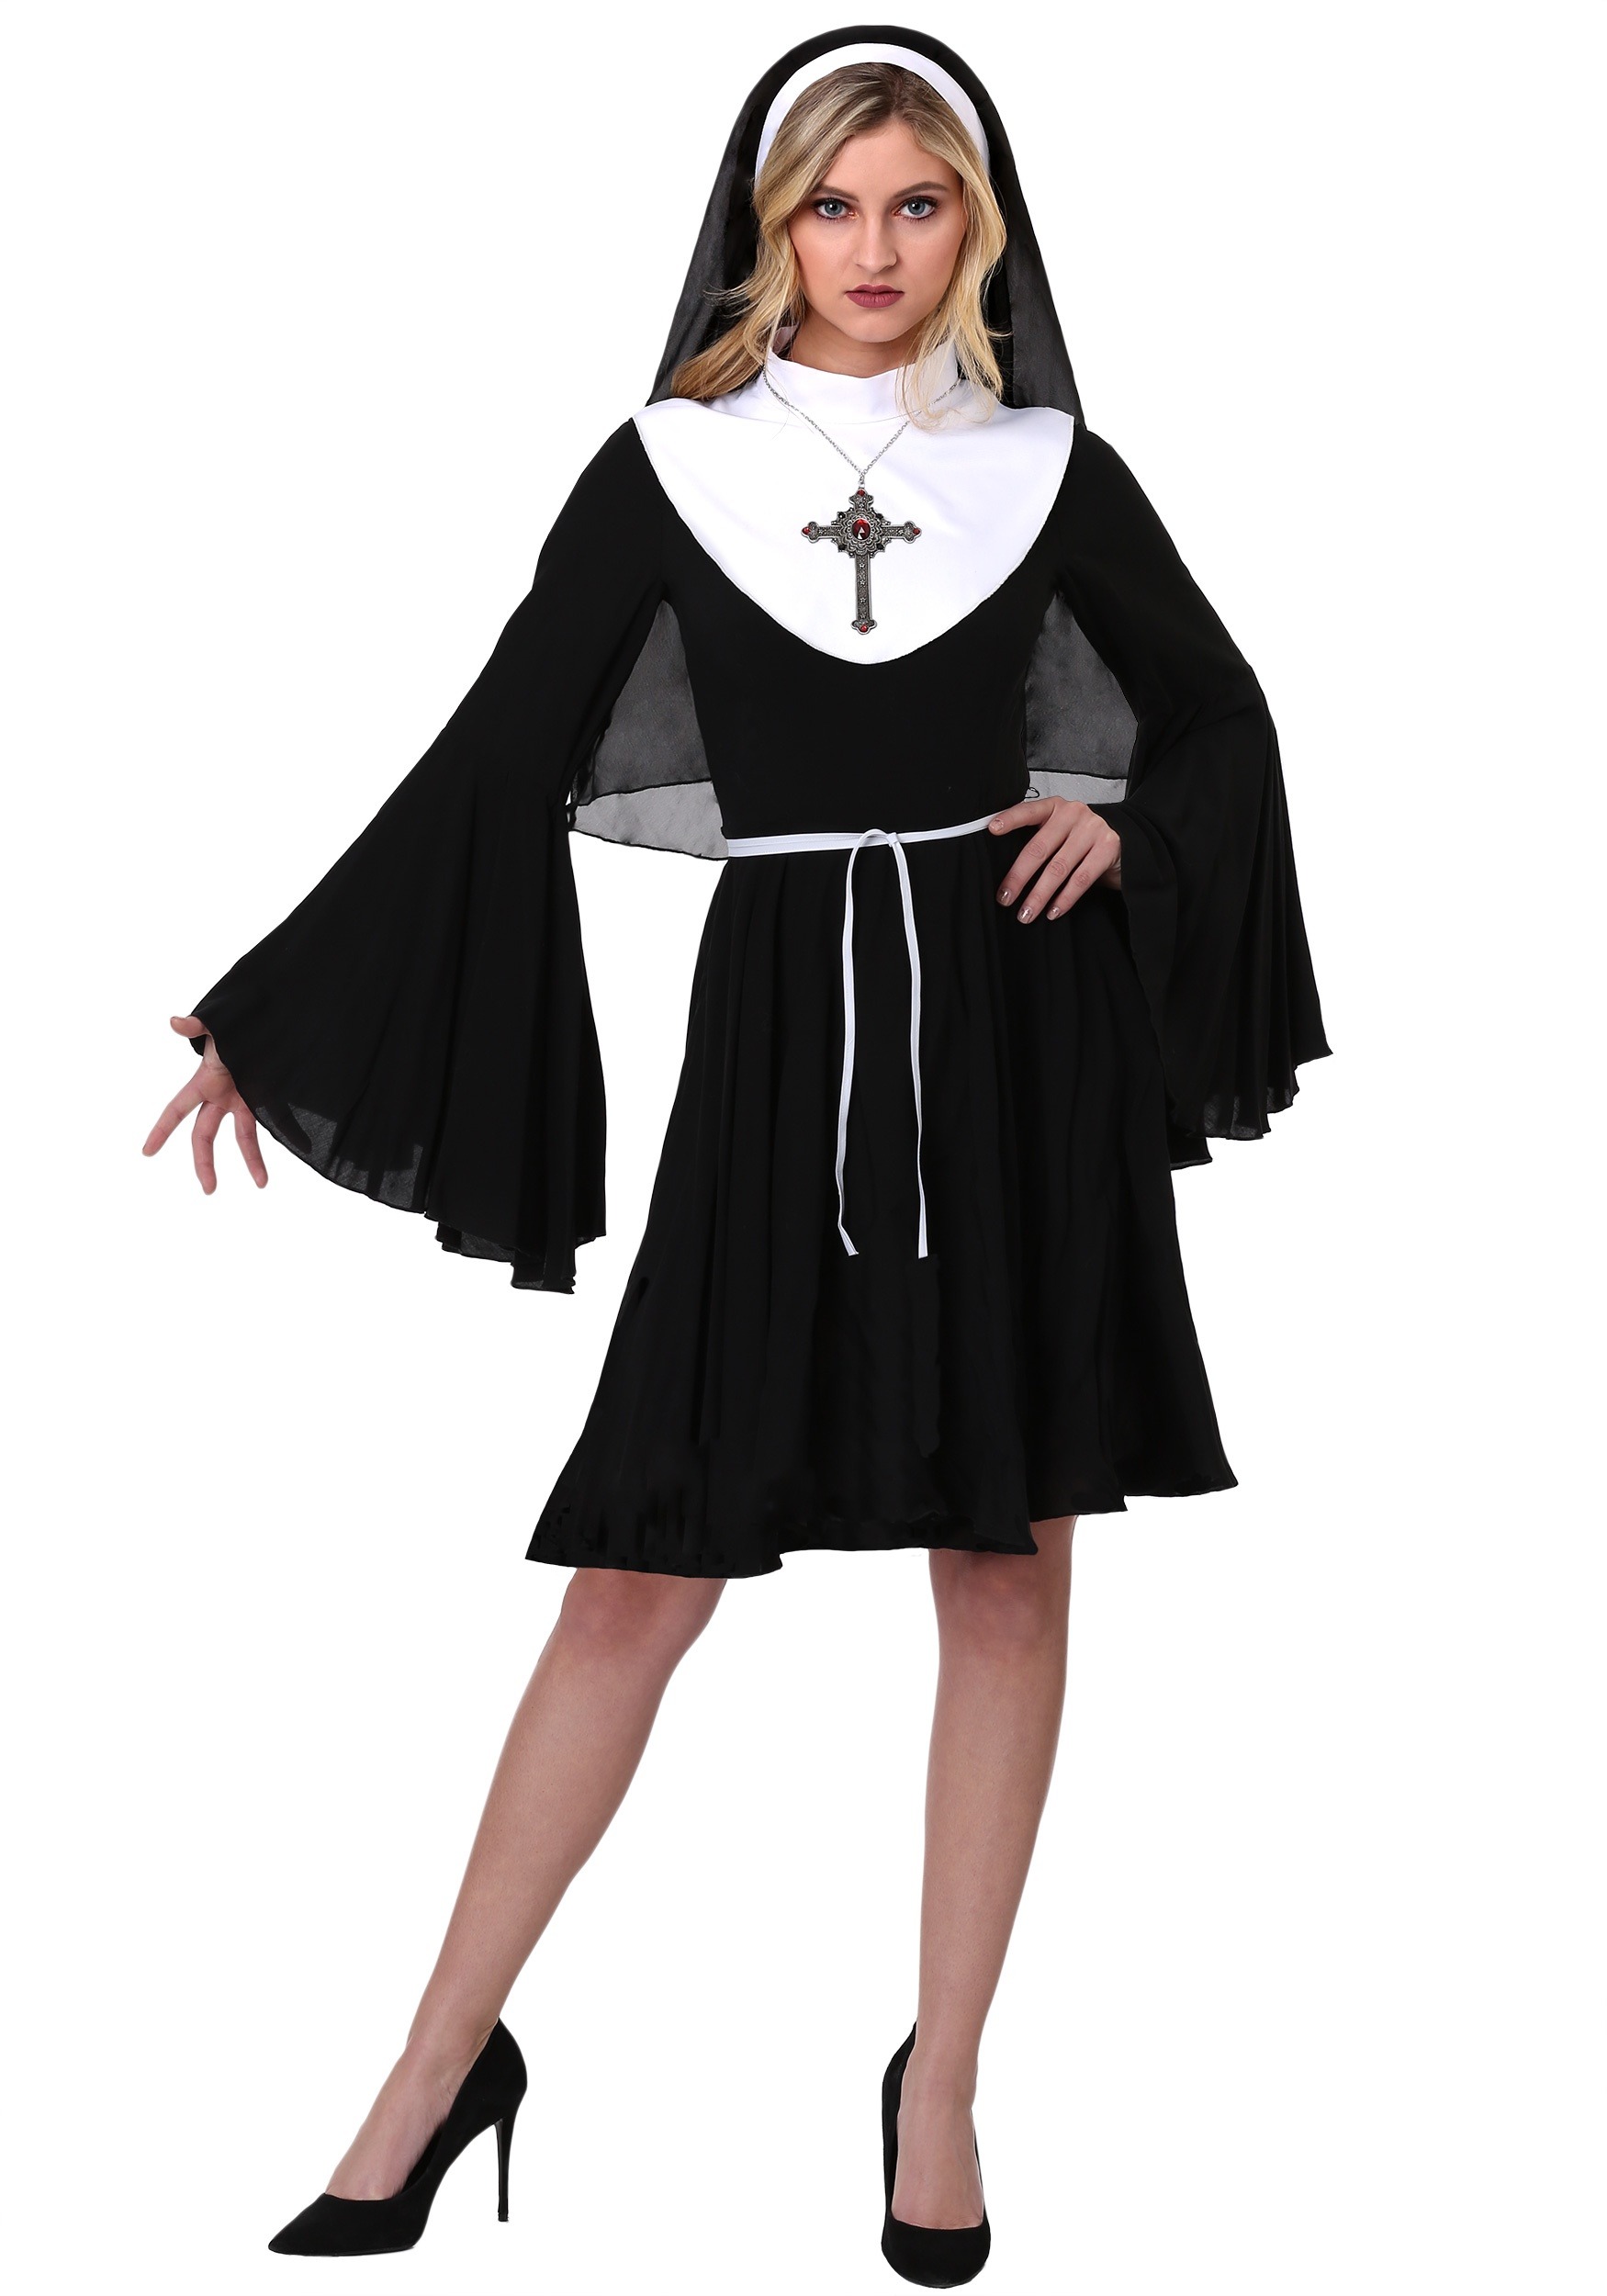 Women’s Sassy Nun Costume